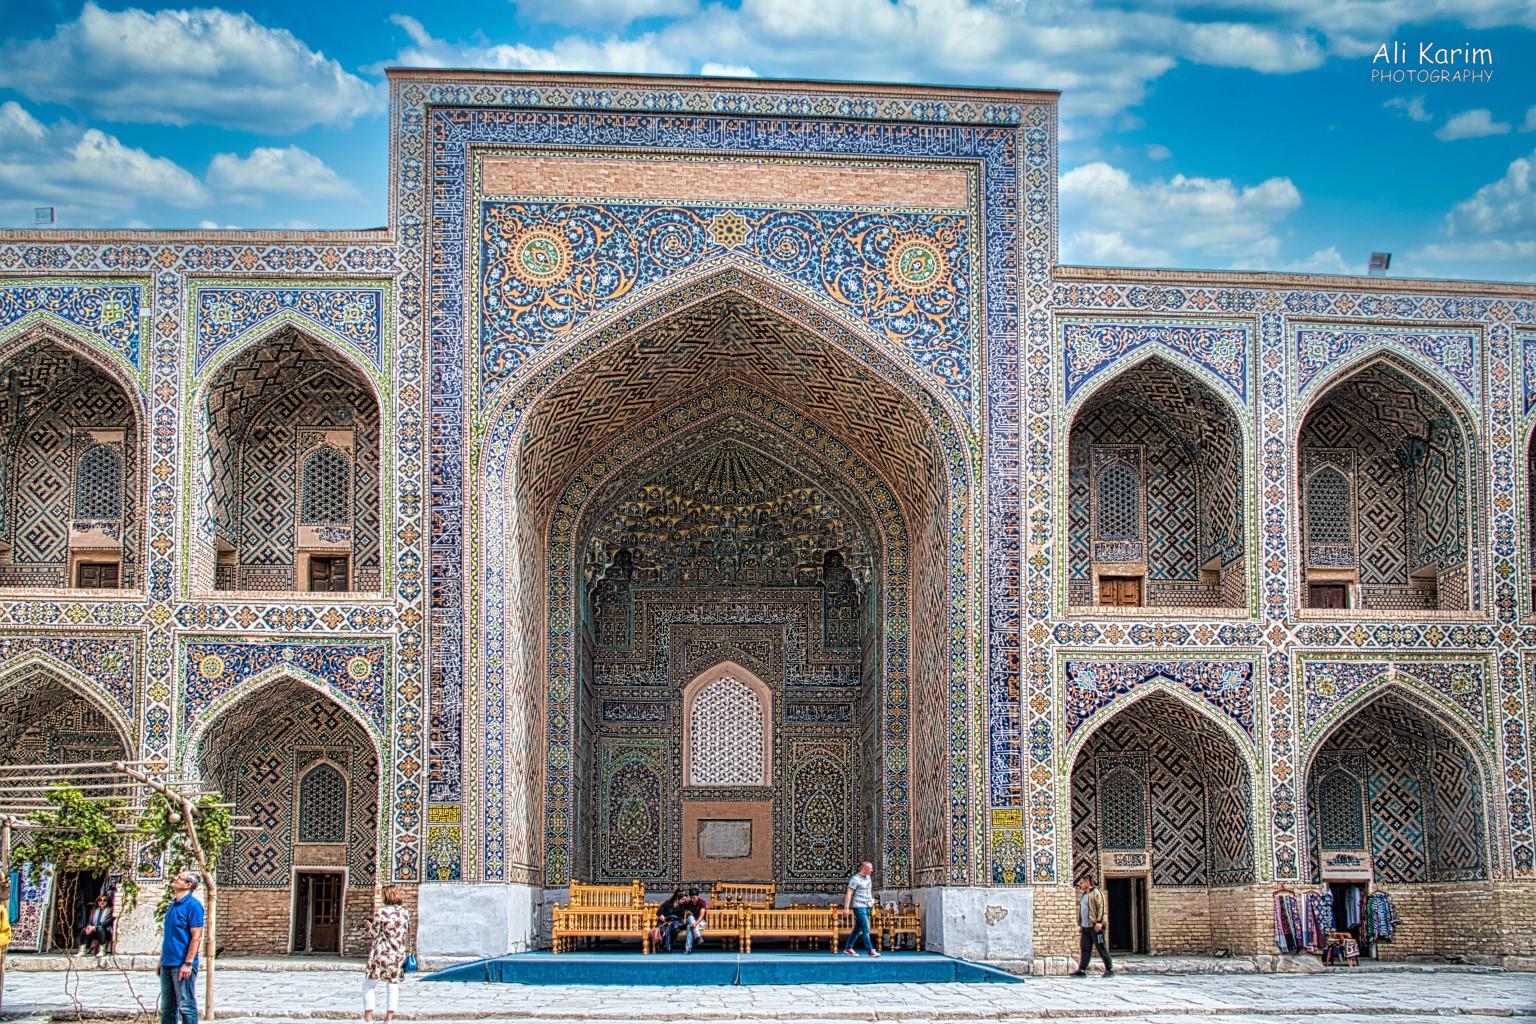 More Samarkand, Inside view of Sher-Dor Madrasah